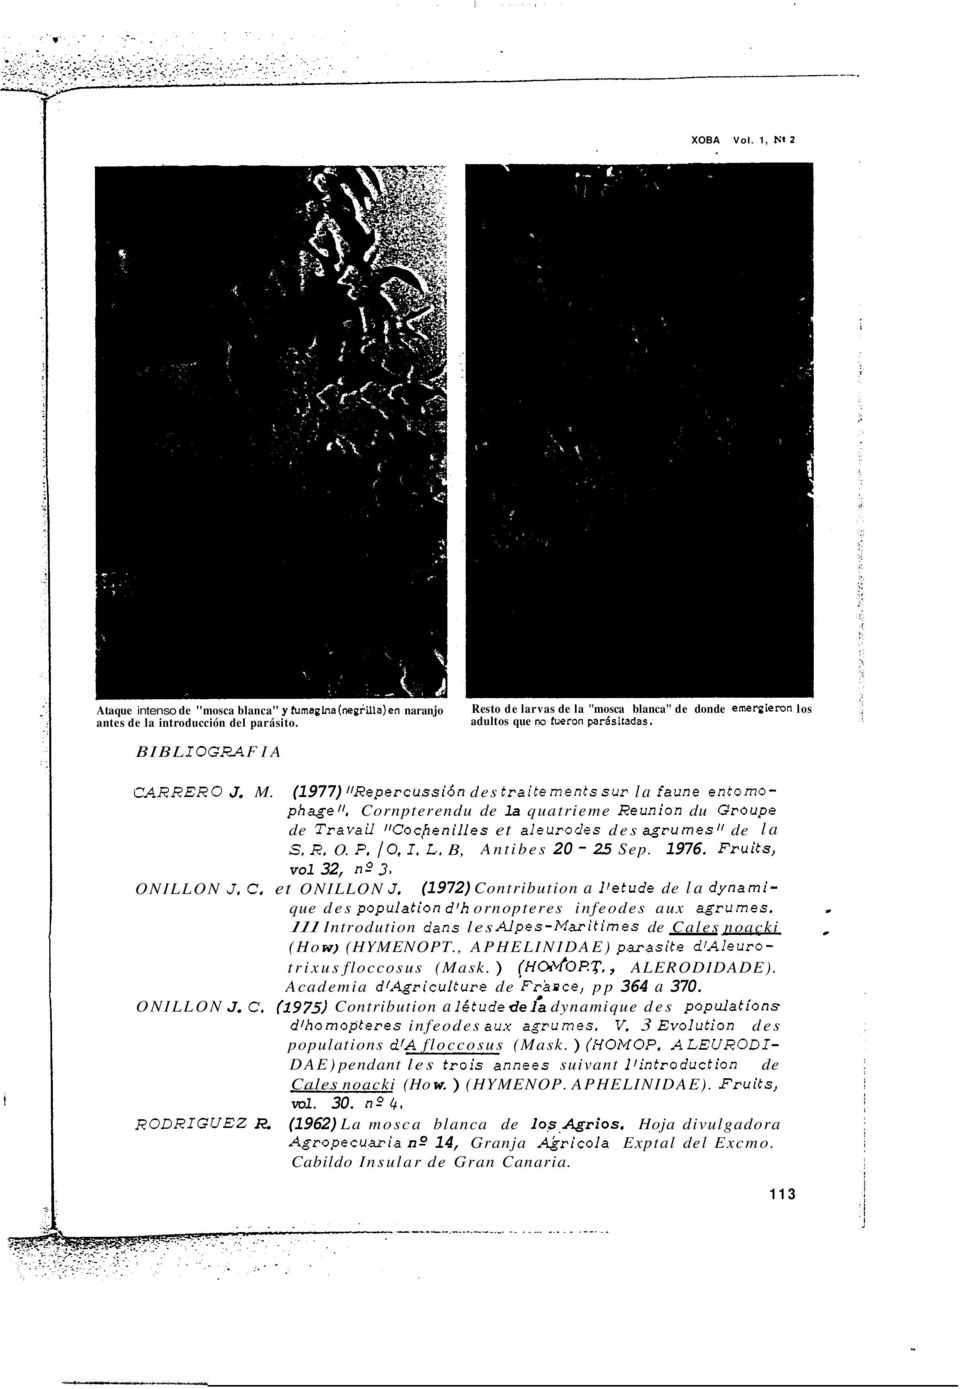 Cornpterendu de la quatrieme Reunion du Groupe de Travaü WoJlenilles et aleuroles des agrurnesl' de la S. R.. P. 10, I. L. B, Antibes 20-2.5 Sep. 1976. Fruits, vol 32, no3. NILLN J. C. et NILLN J.